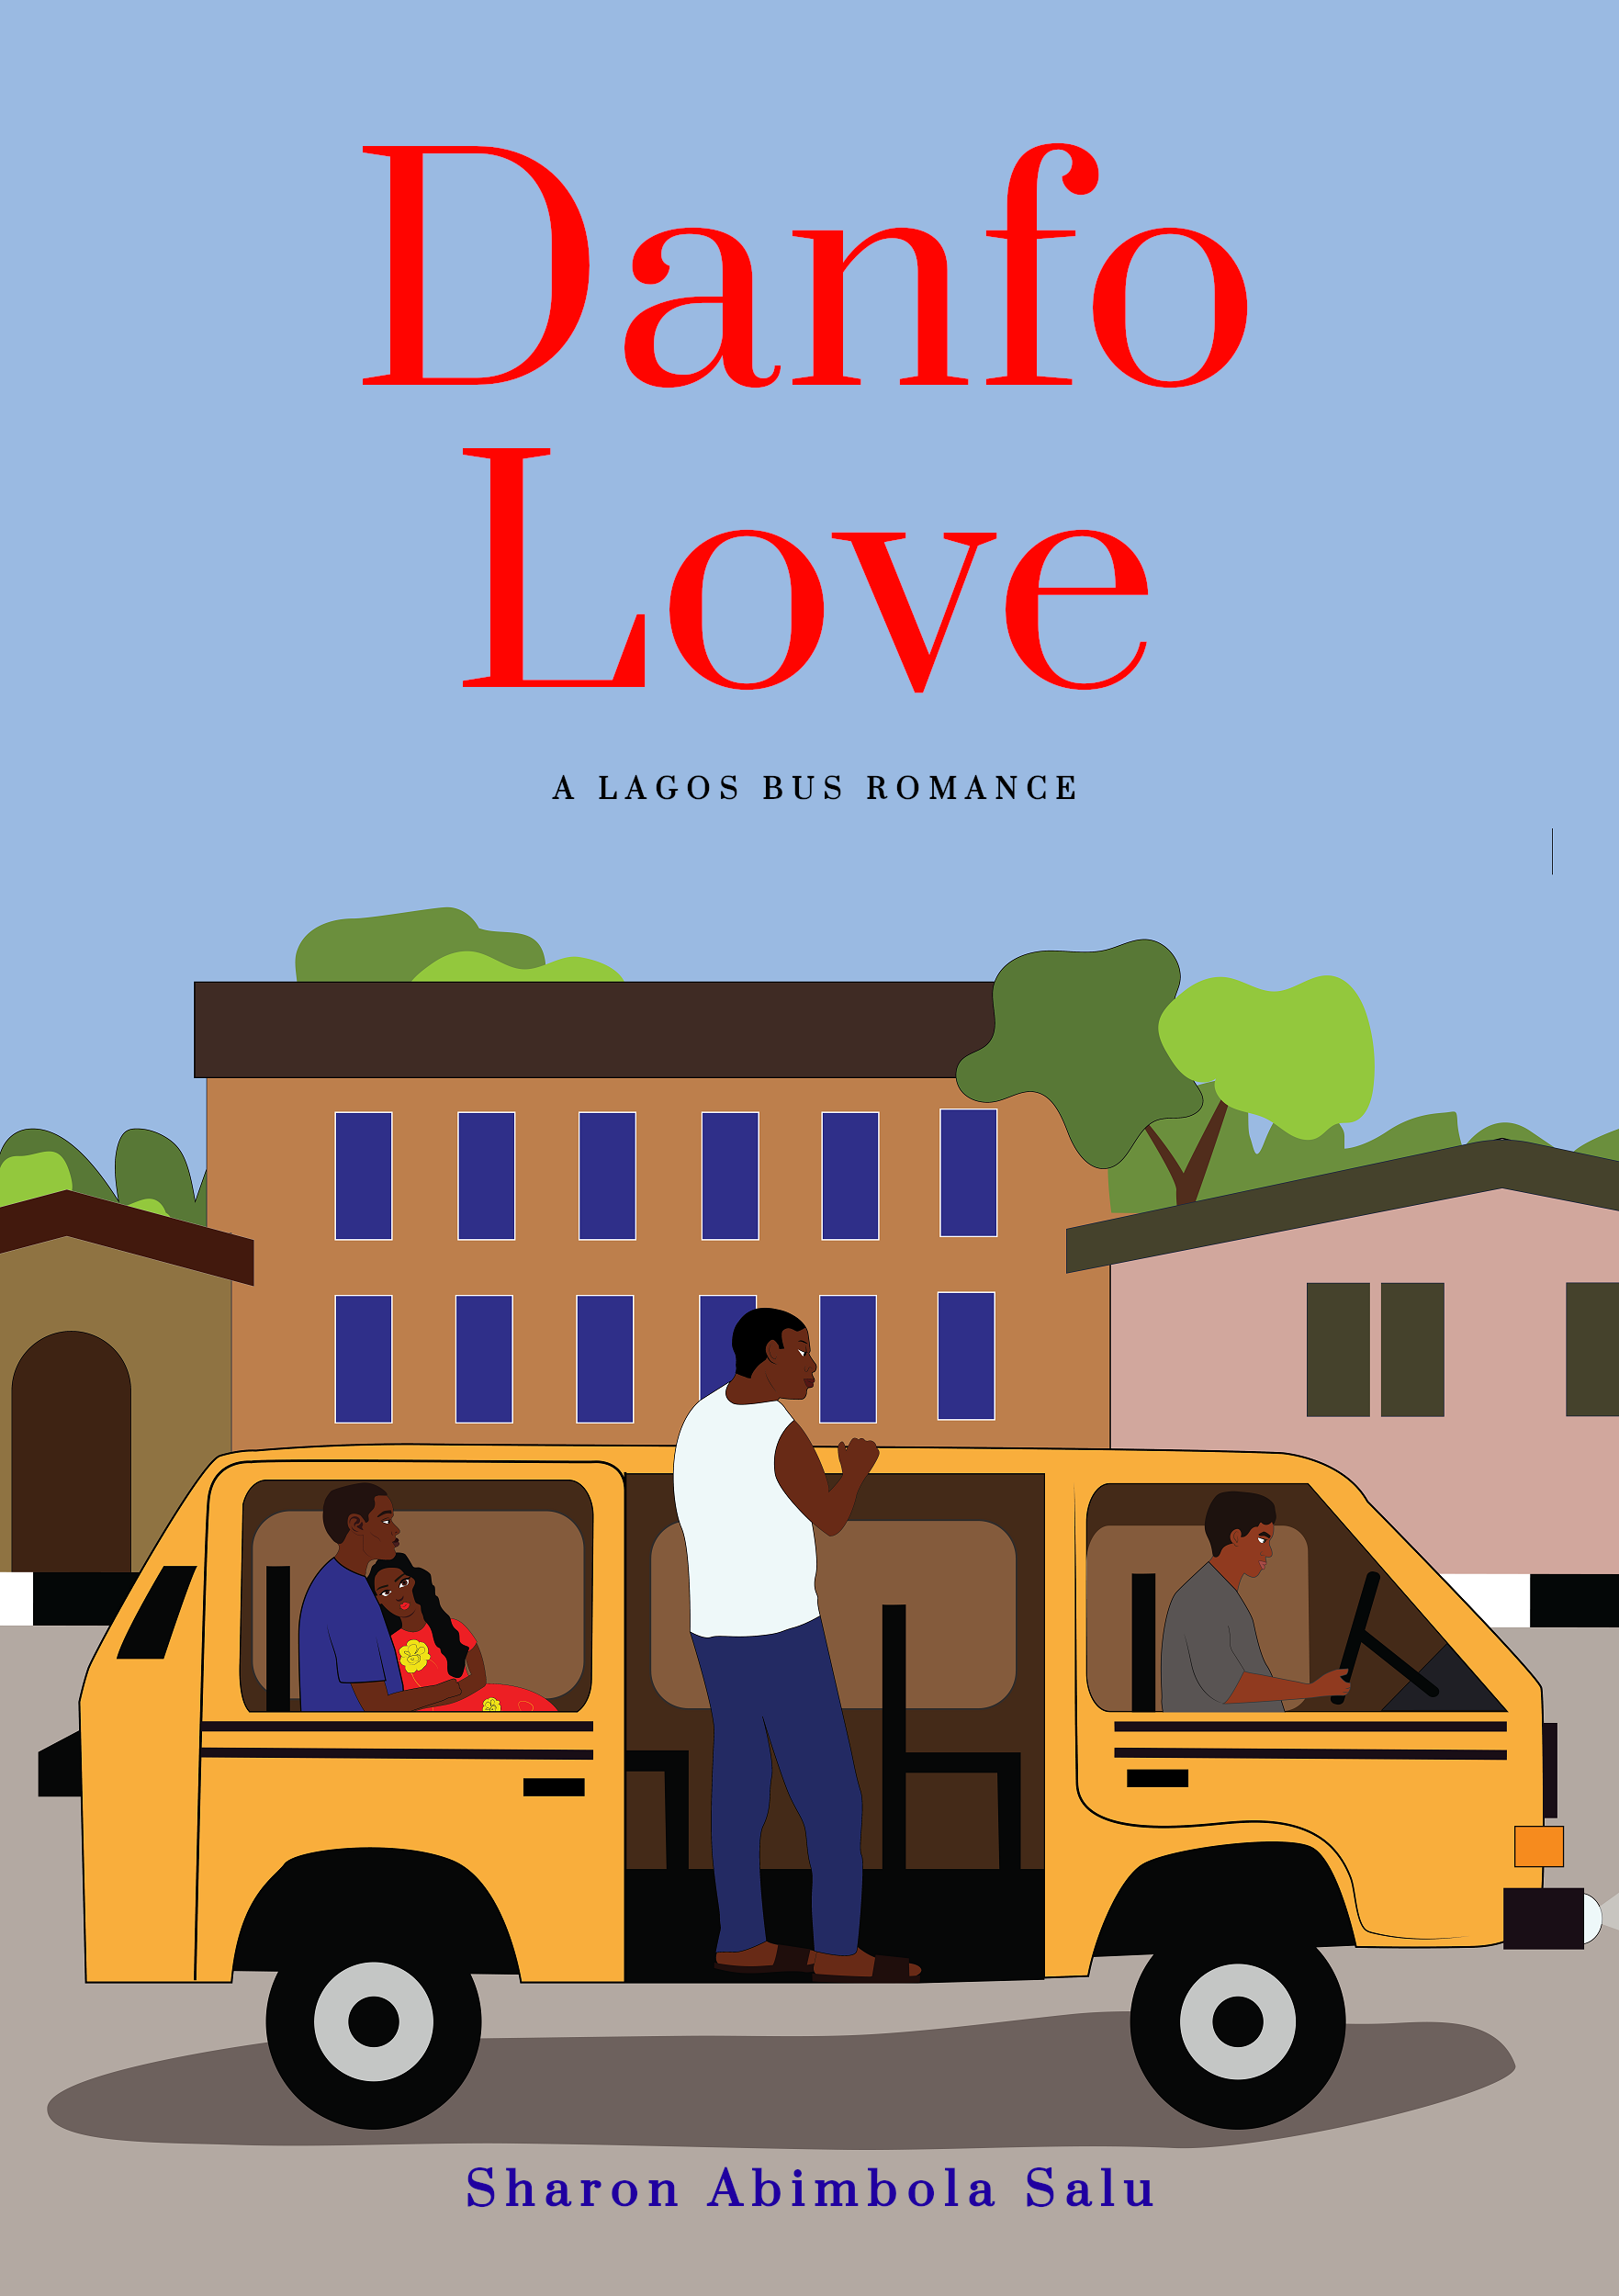 Danfo Love, a Lagos Public Commercial Bus Romance - eBook Cover